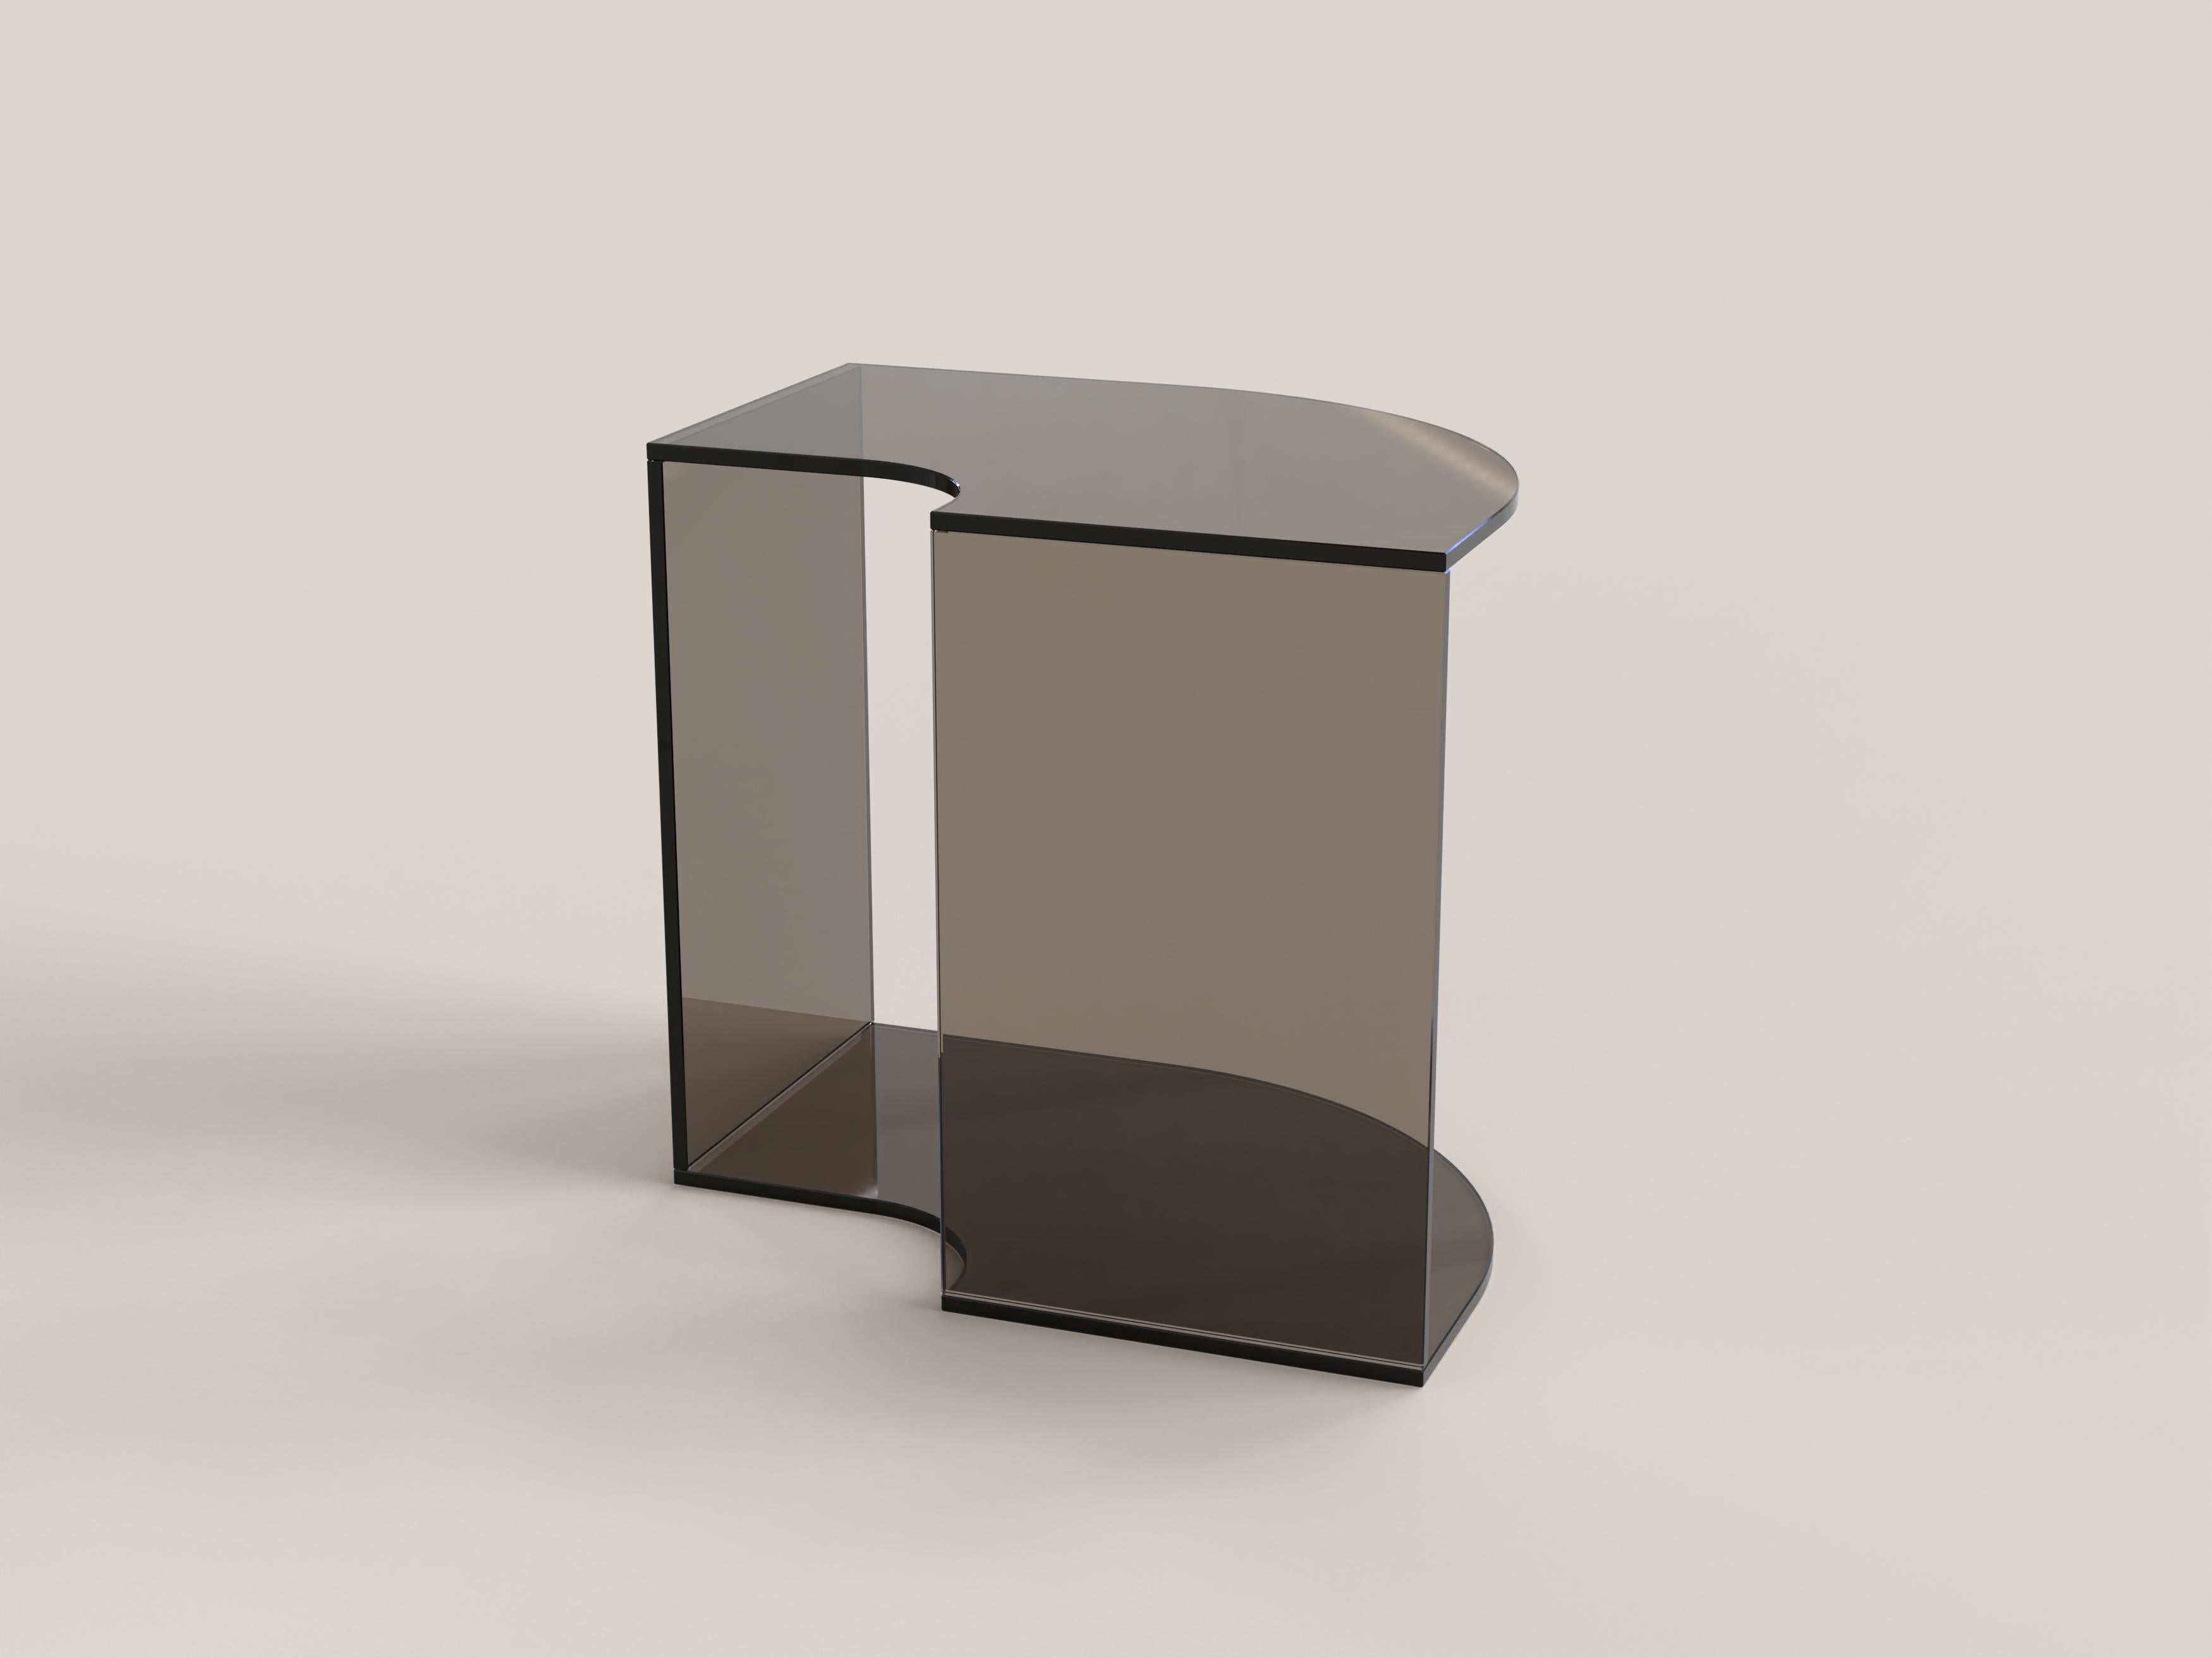 Contemporary Limited Edition Bronze Glass Table, Quarter V1 by Edizione Limitata For Sale 2